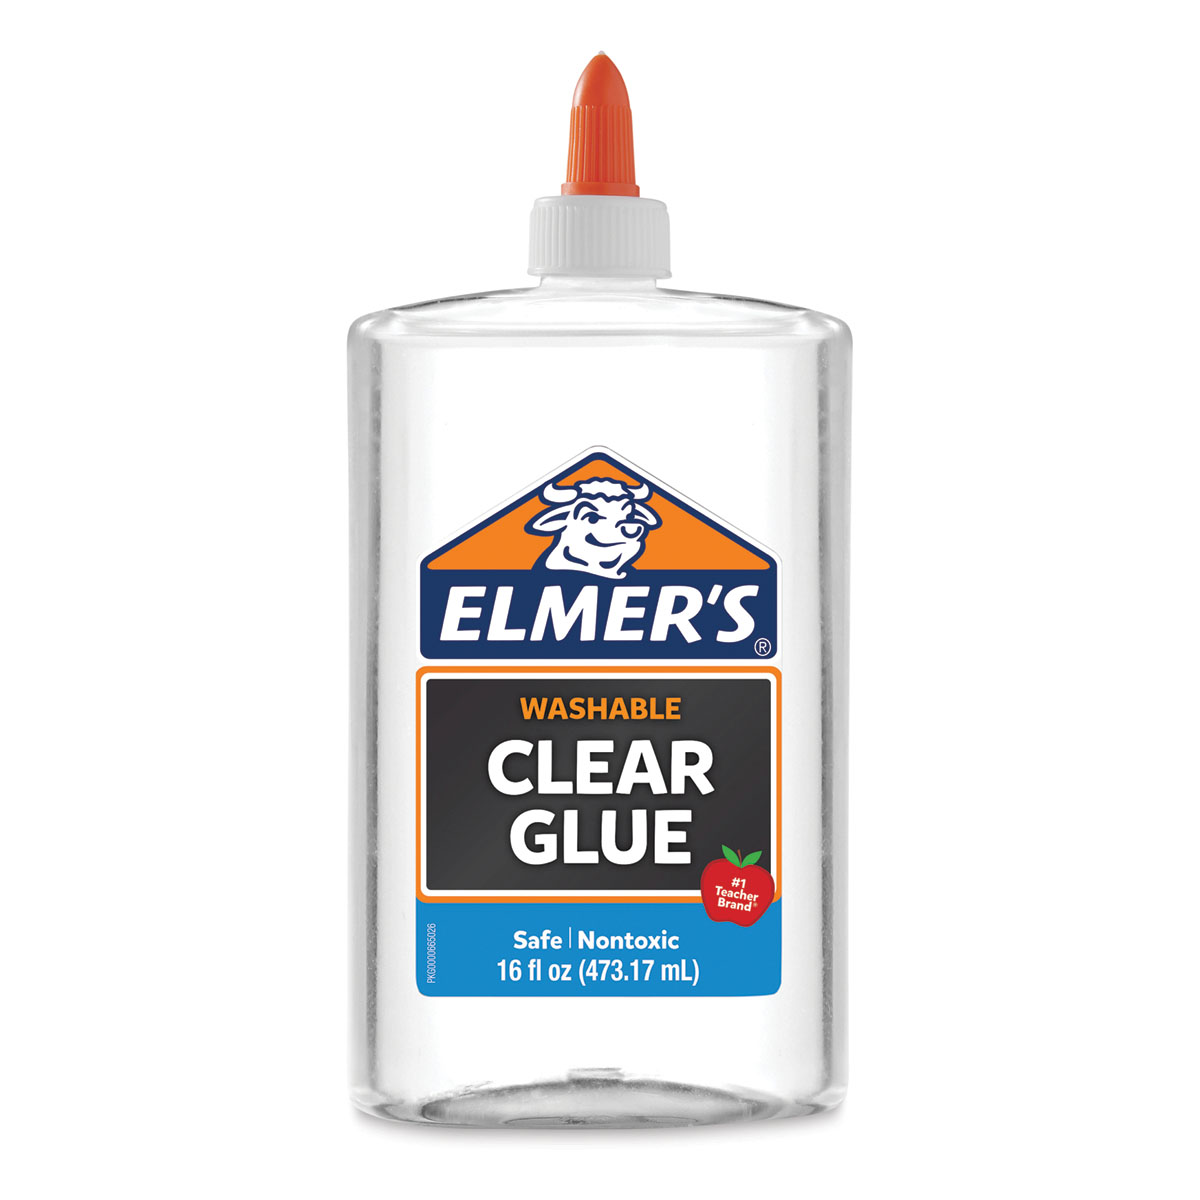 Elmer's Washable School Glue